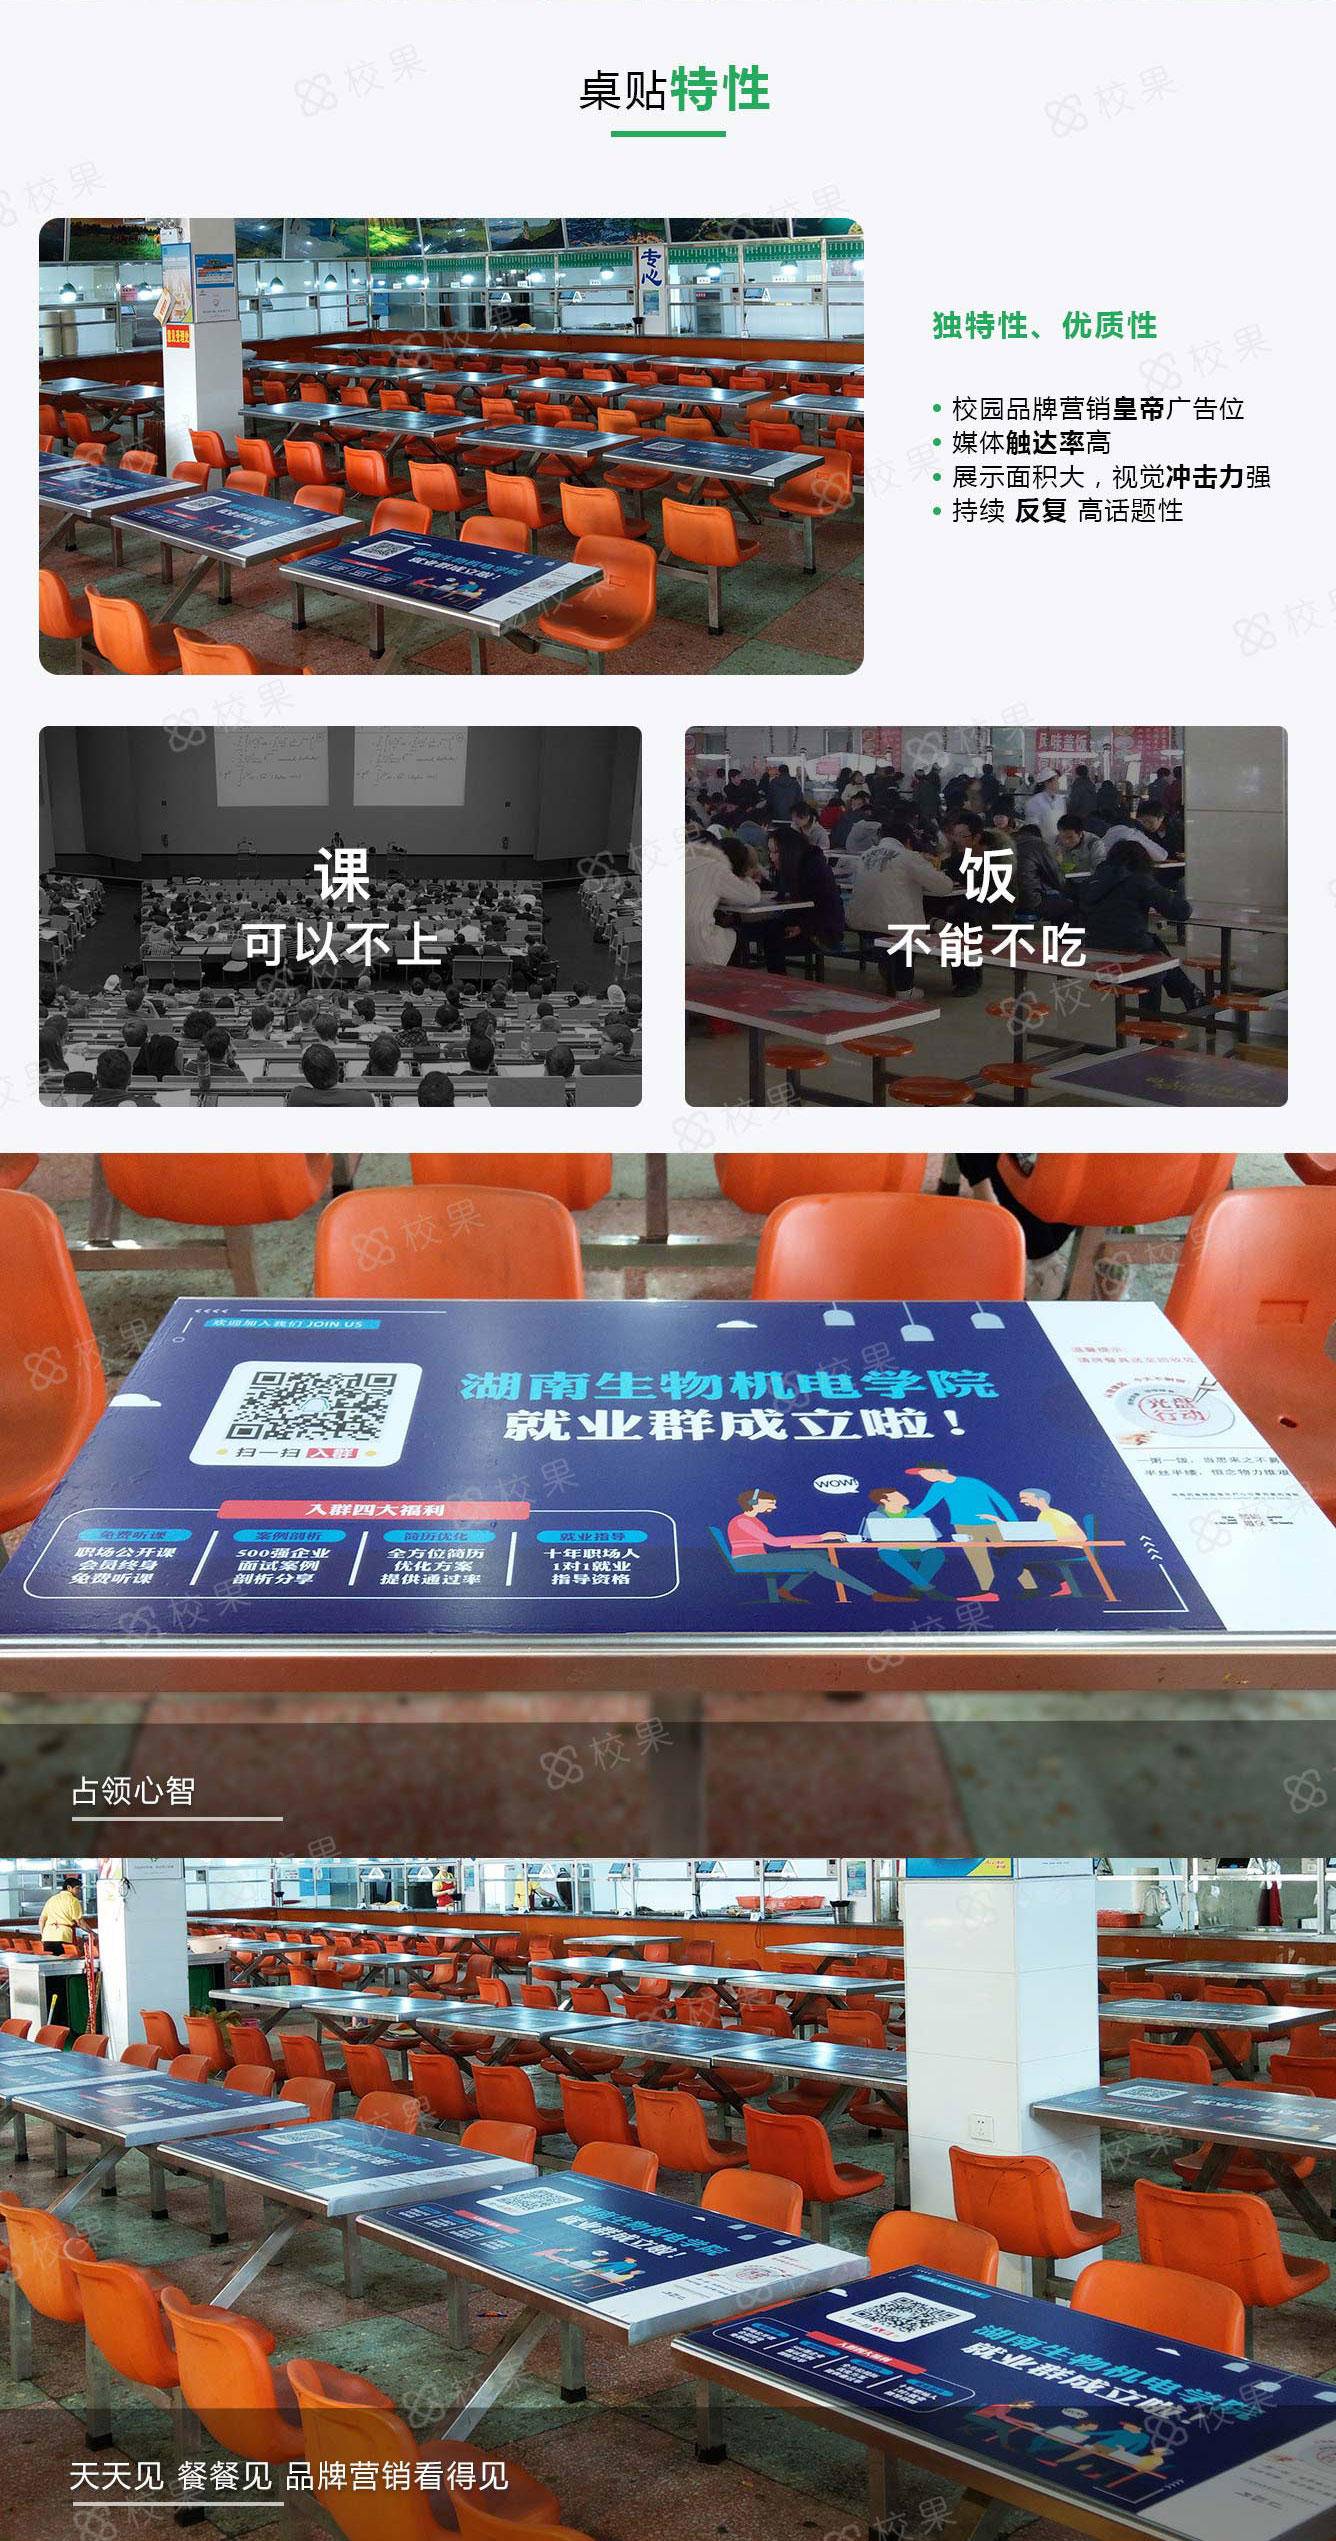 广州高校桌贴广告特征